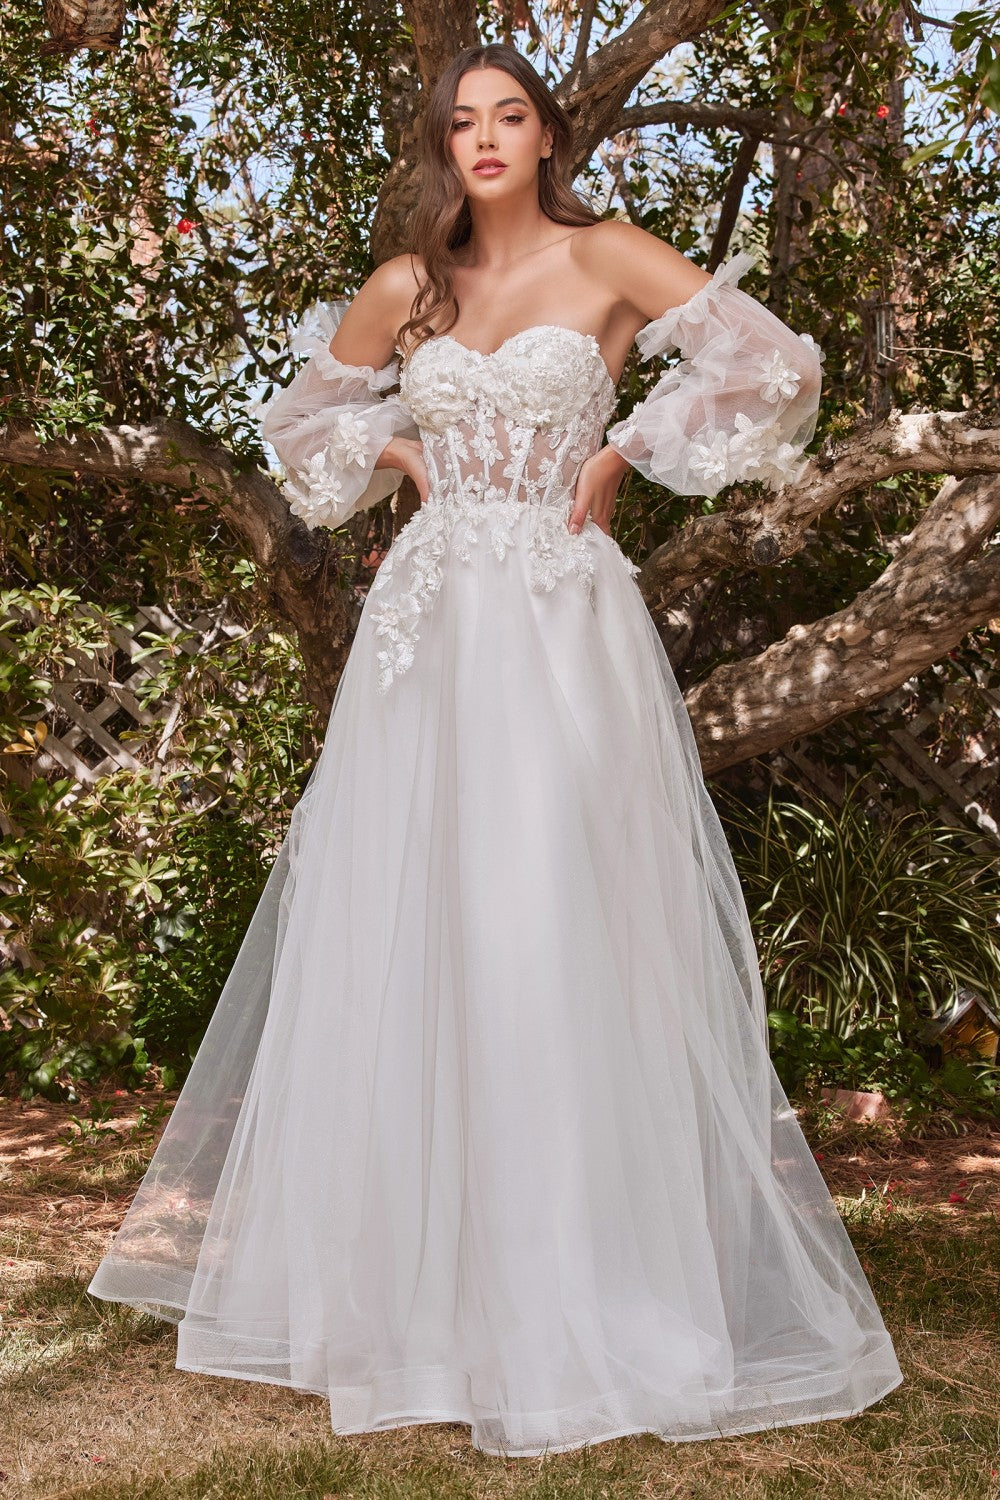 Lace Vintage Sweet Princess Style Strapless Off Shoulder Wedding & Bride Gown 3D Floral Appliqués Romantic Vibes Dress CDCD962W-3